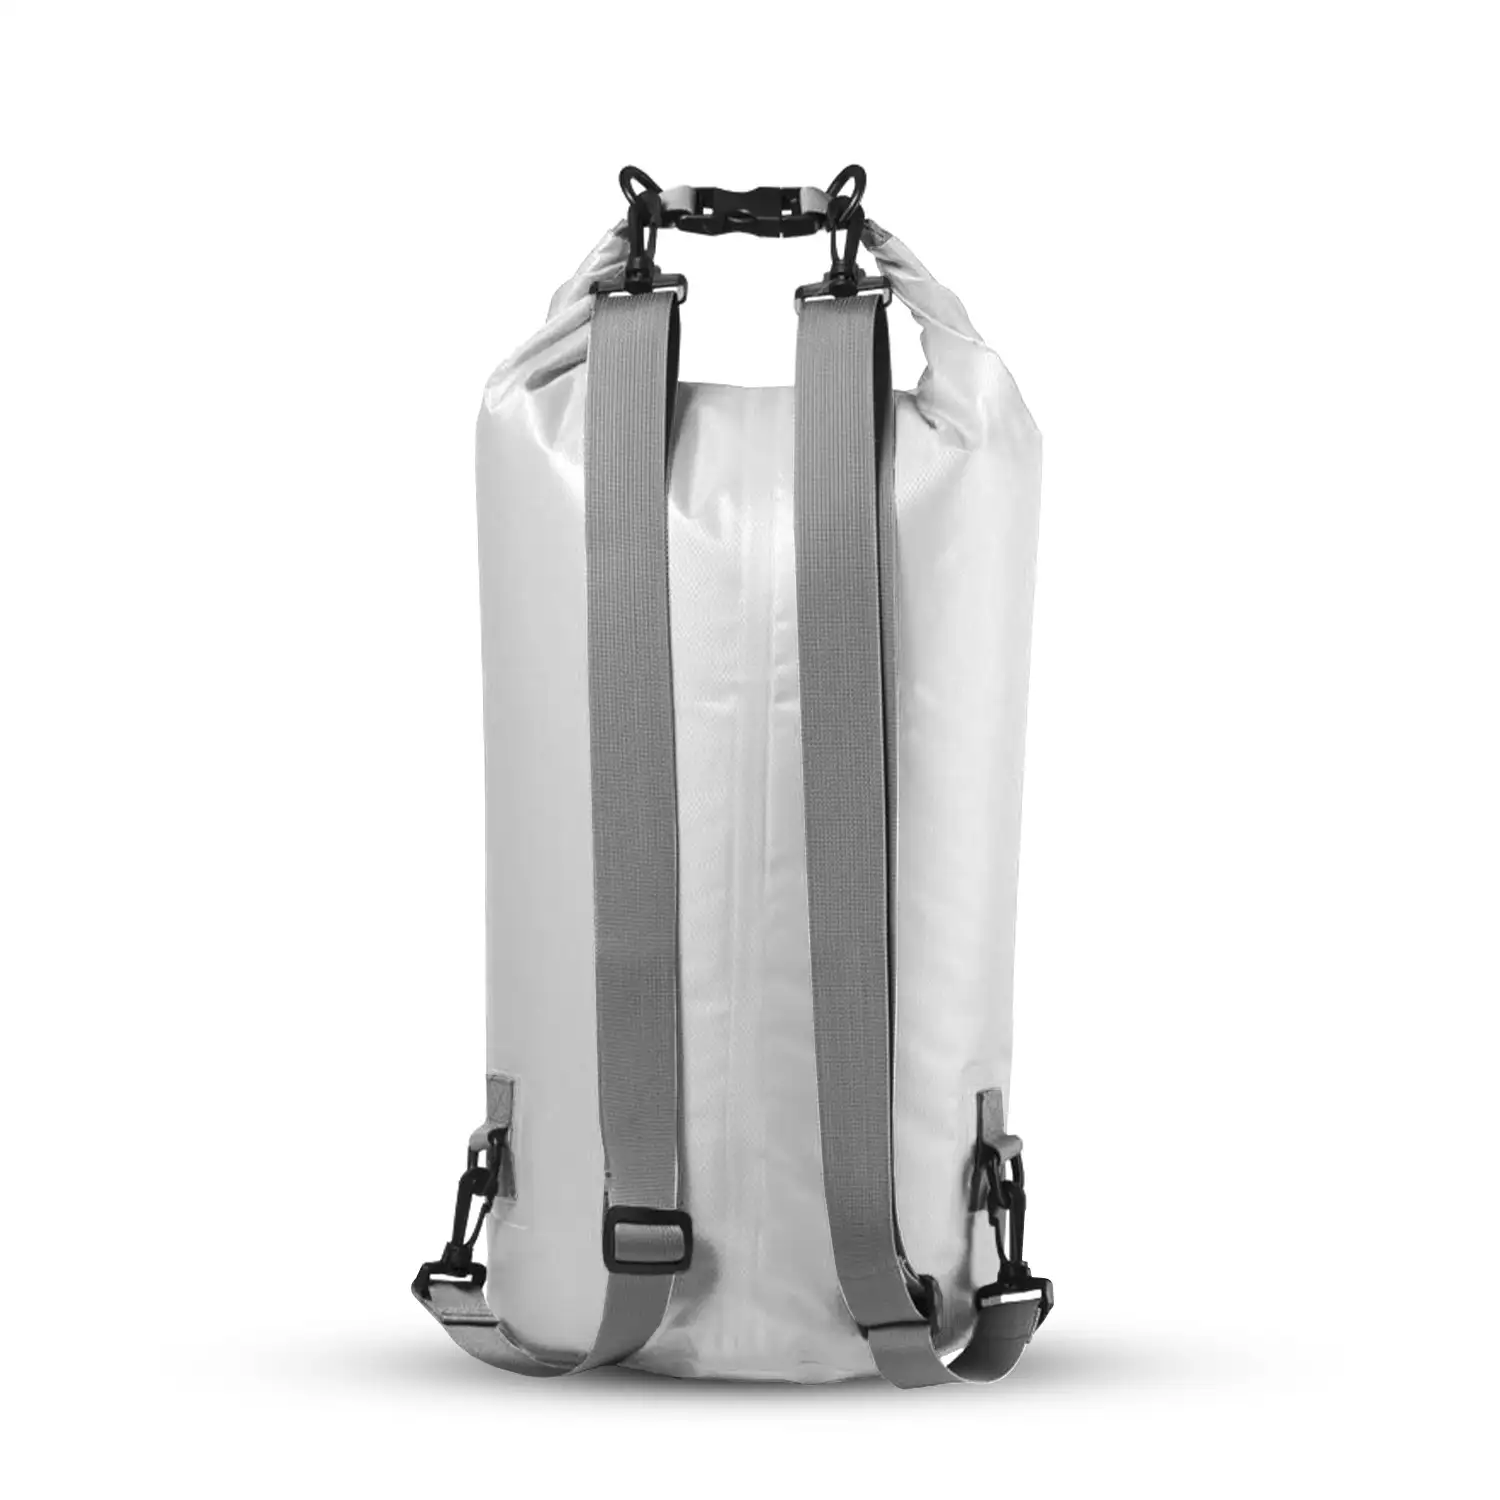 Tayrux mochila impermeable en suave y resistente Ripstop con cierre estanco de seguridad. 20 litros de capacidad.